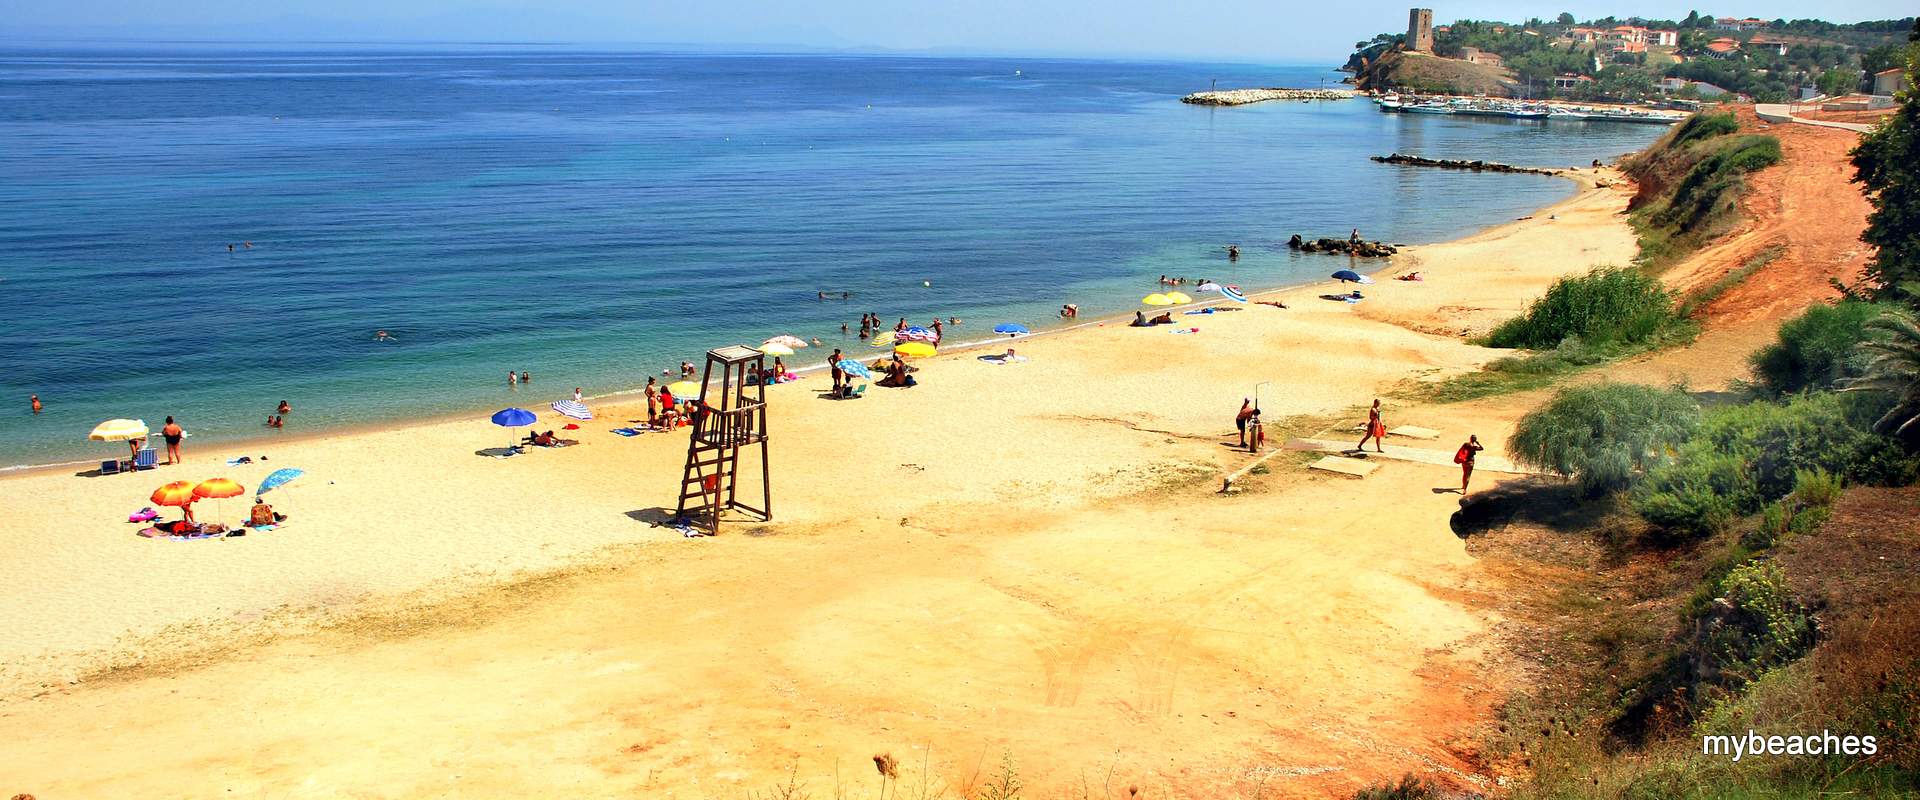 Νέα Φώκαια παραλία, Κασσάνδρα, Χαλκιδική, Ελλάδα